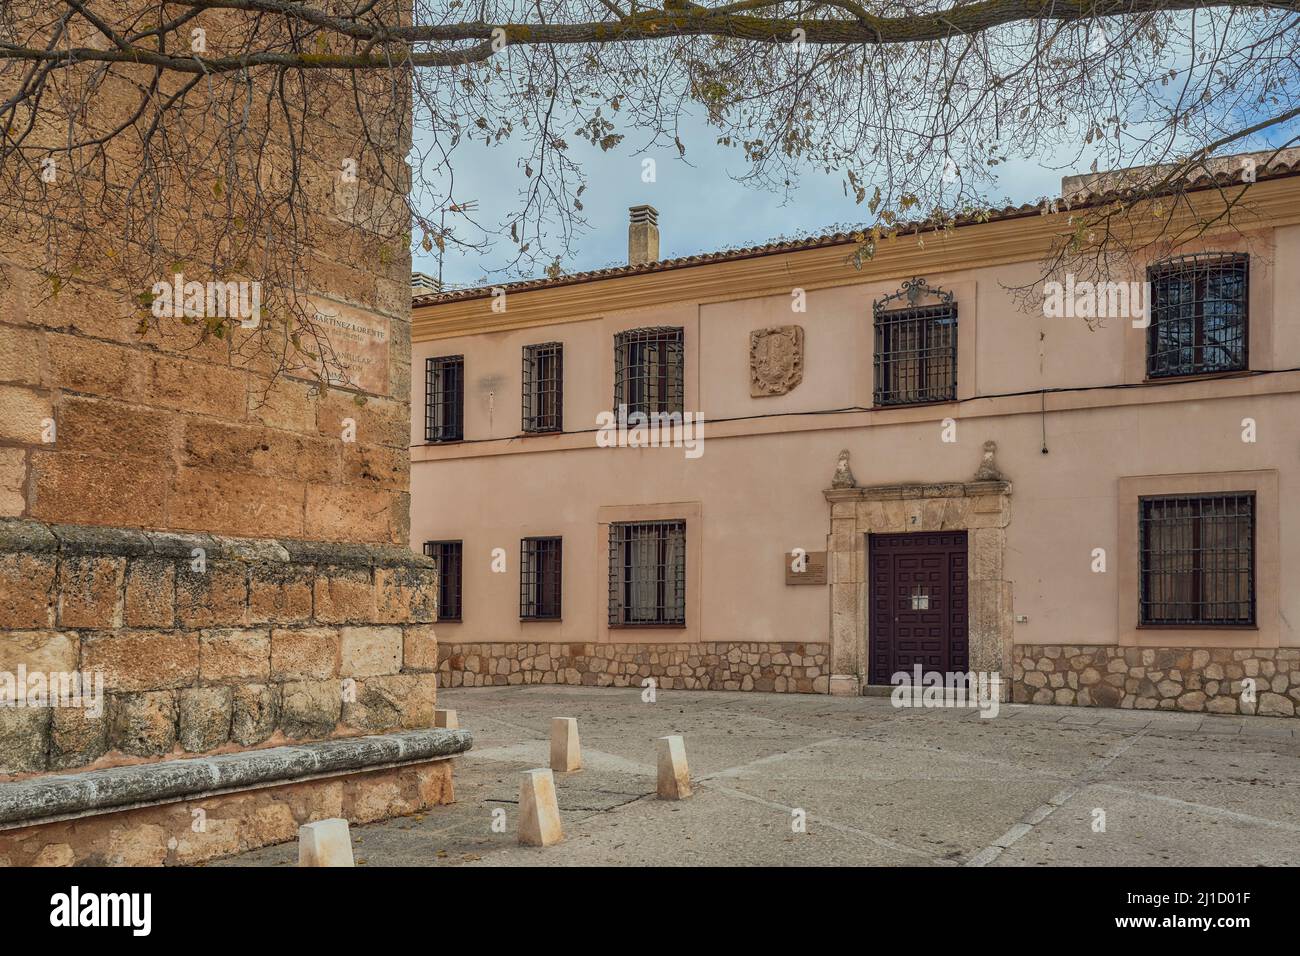 Restauration de la maison du palais sur la Plaza Infante Don Juan Manuel, Alarcon, Cuenca, Castilla-la Mancha, Espagne, Europe Banque D'Images